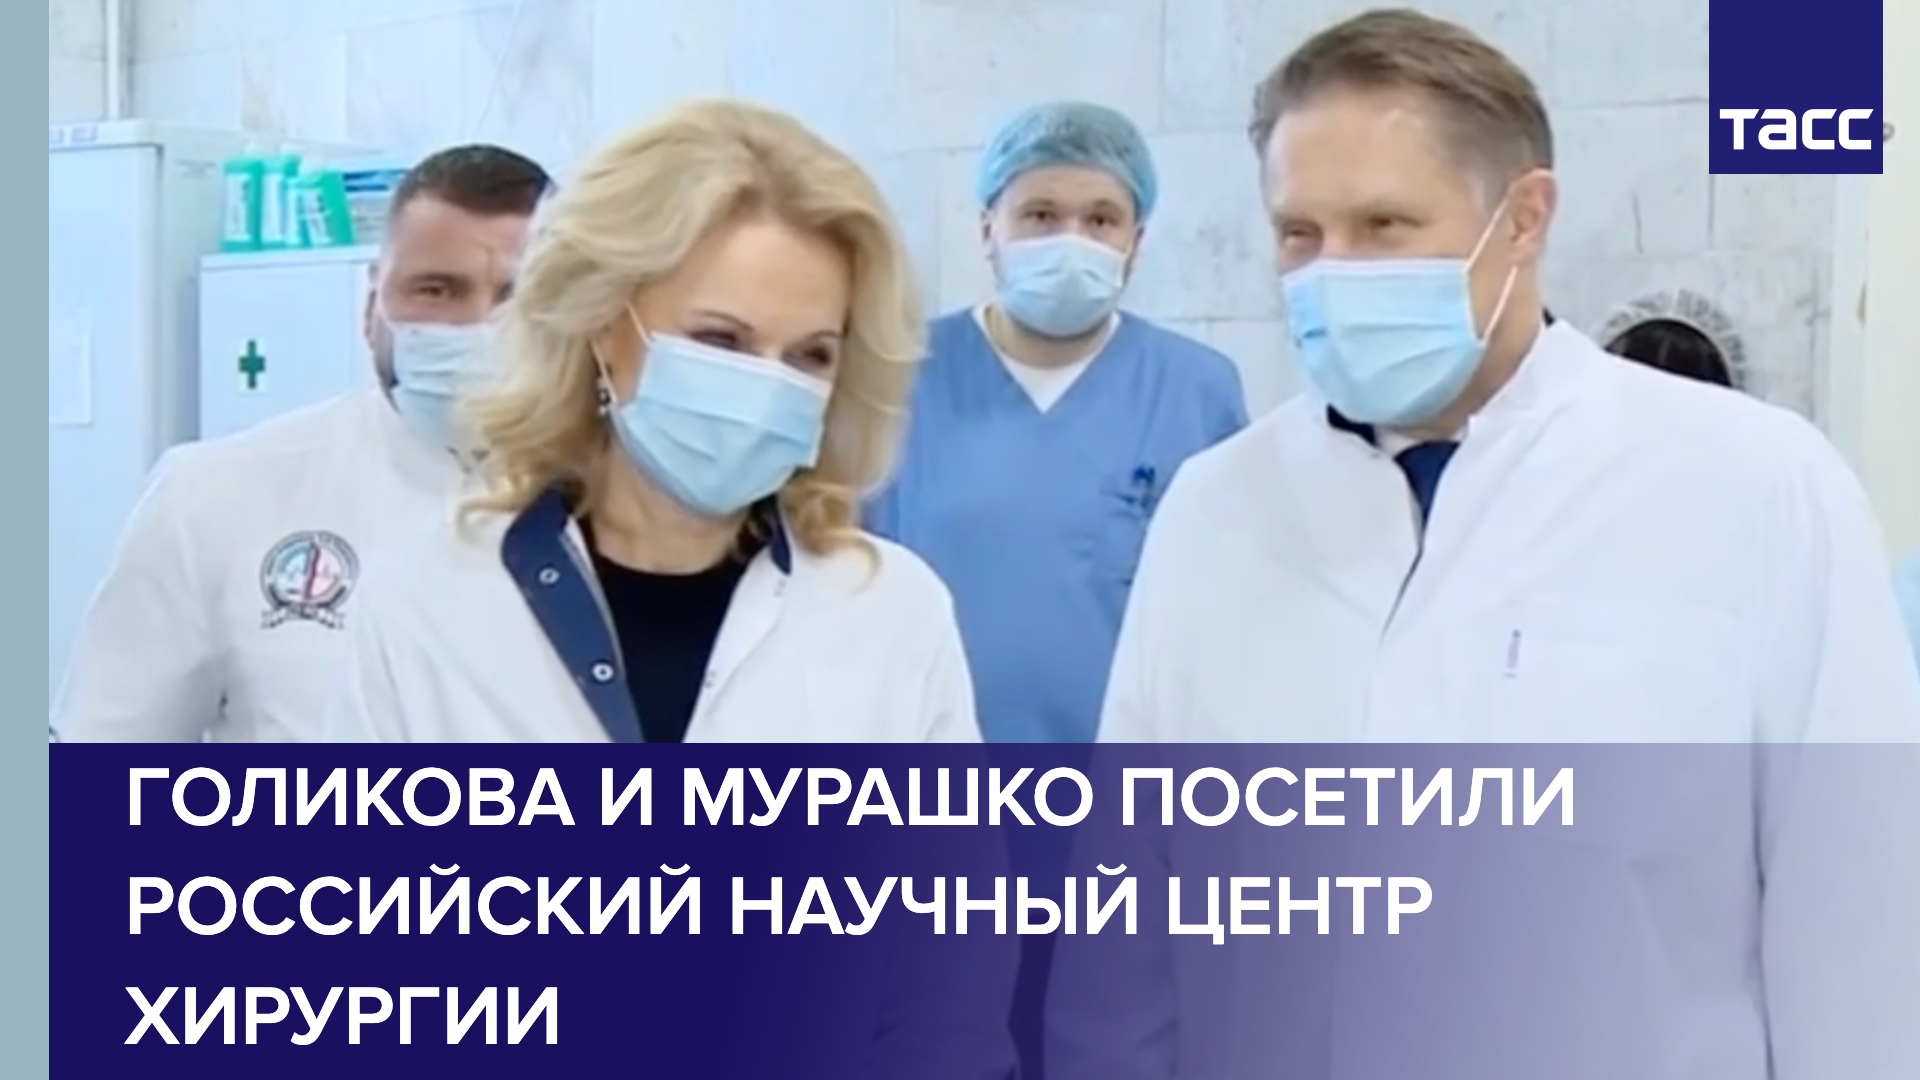 Голикова и Мурашко посетили Российский научный центр хирургии